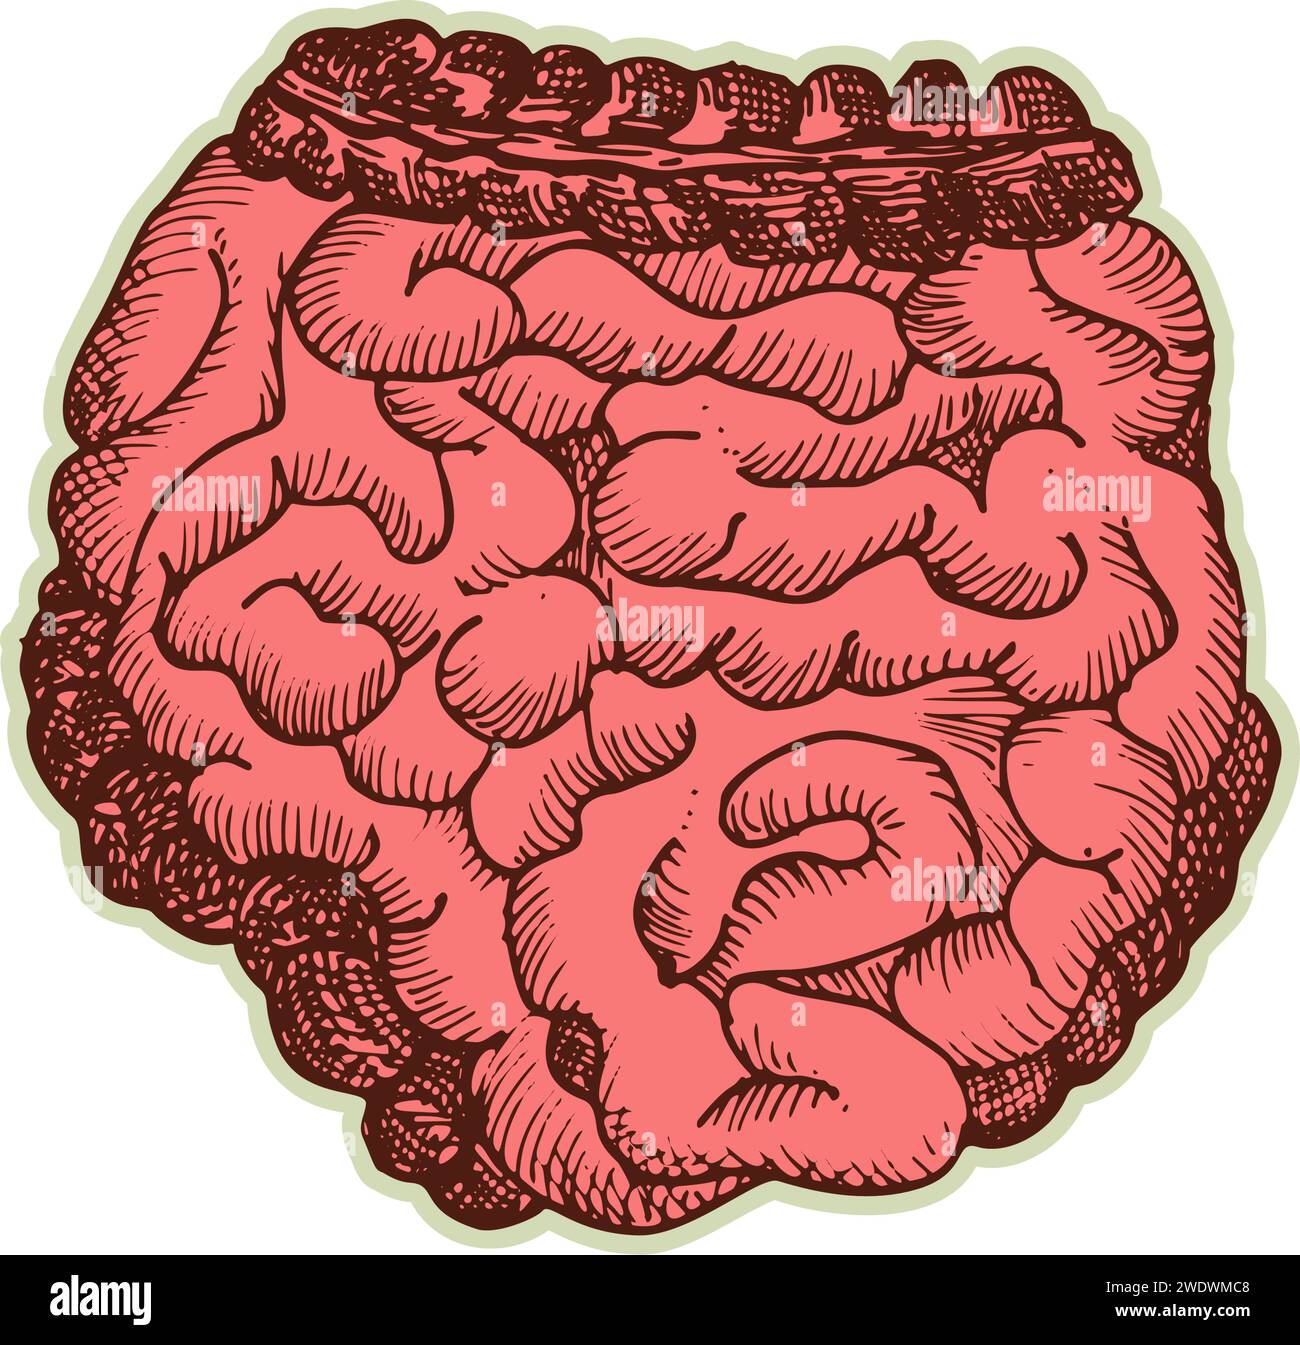 Autocollant des intestins humains. Vintage anatomie gravure organe esquisse isolé sur fond blanc. Bonne idée design rétro médecine affiche à la main dessinée Illustration de Vecteur